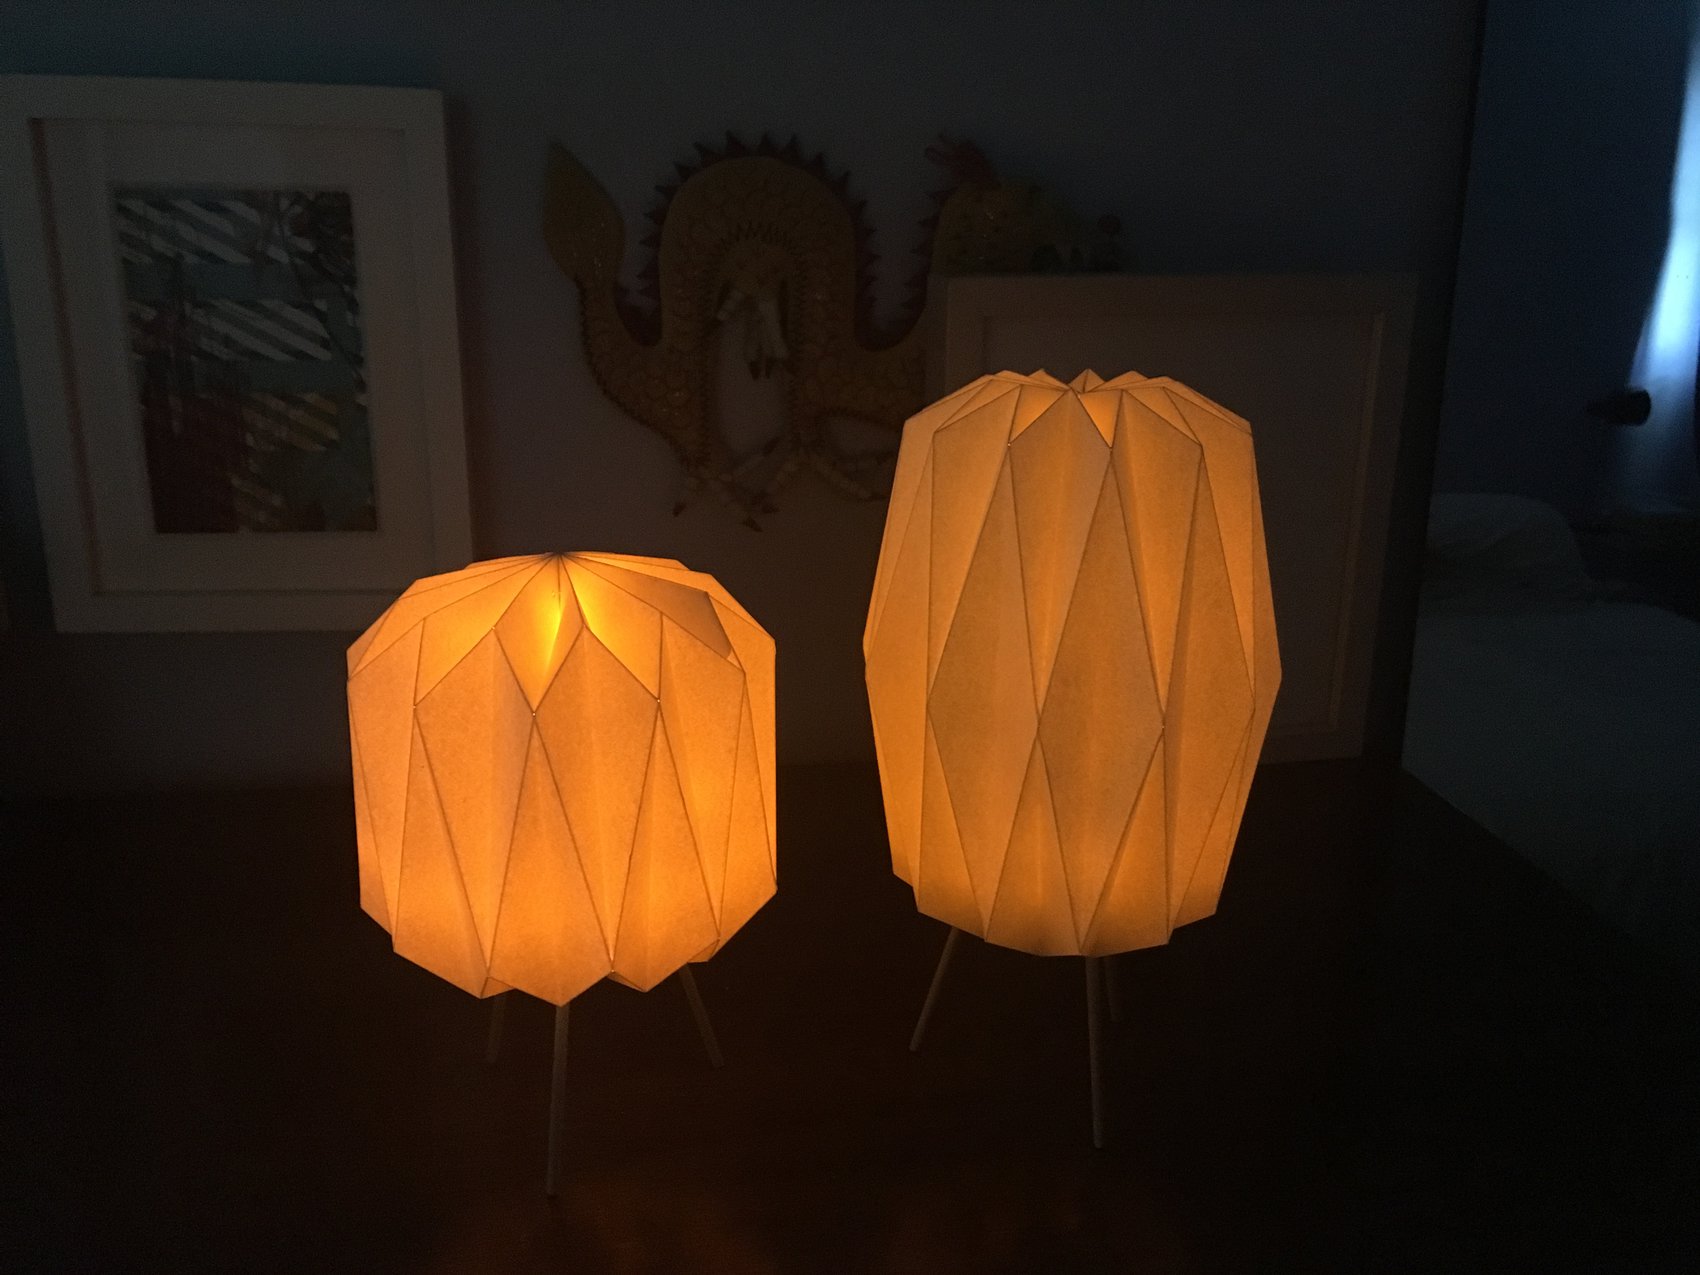 lamps at night